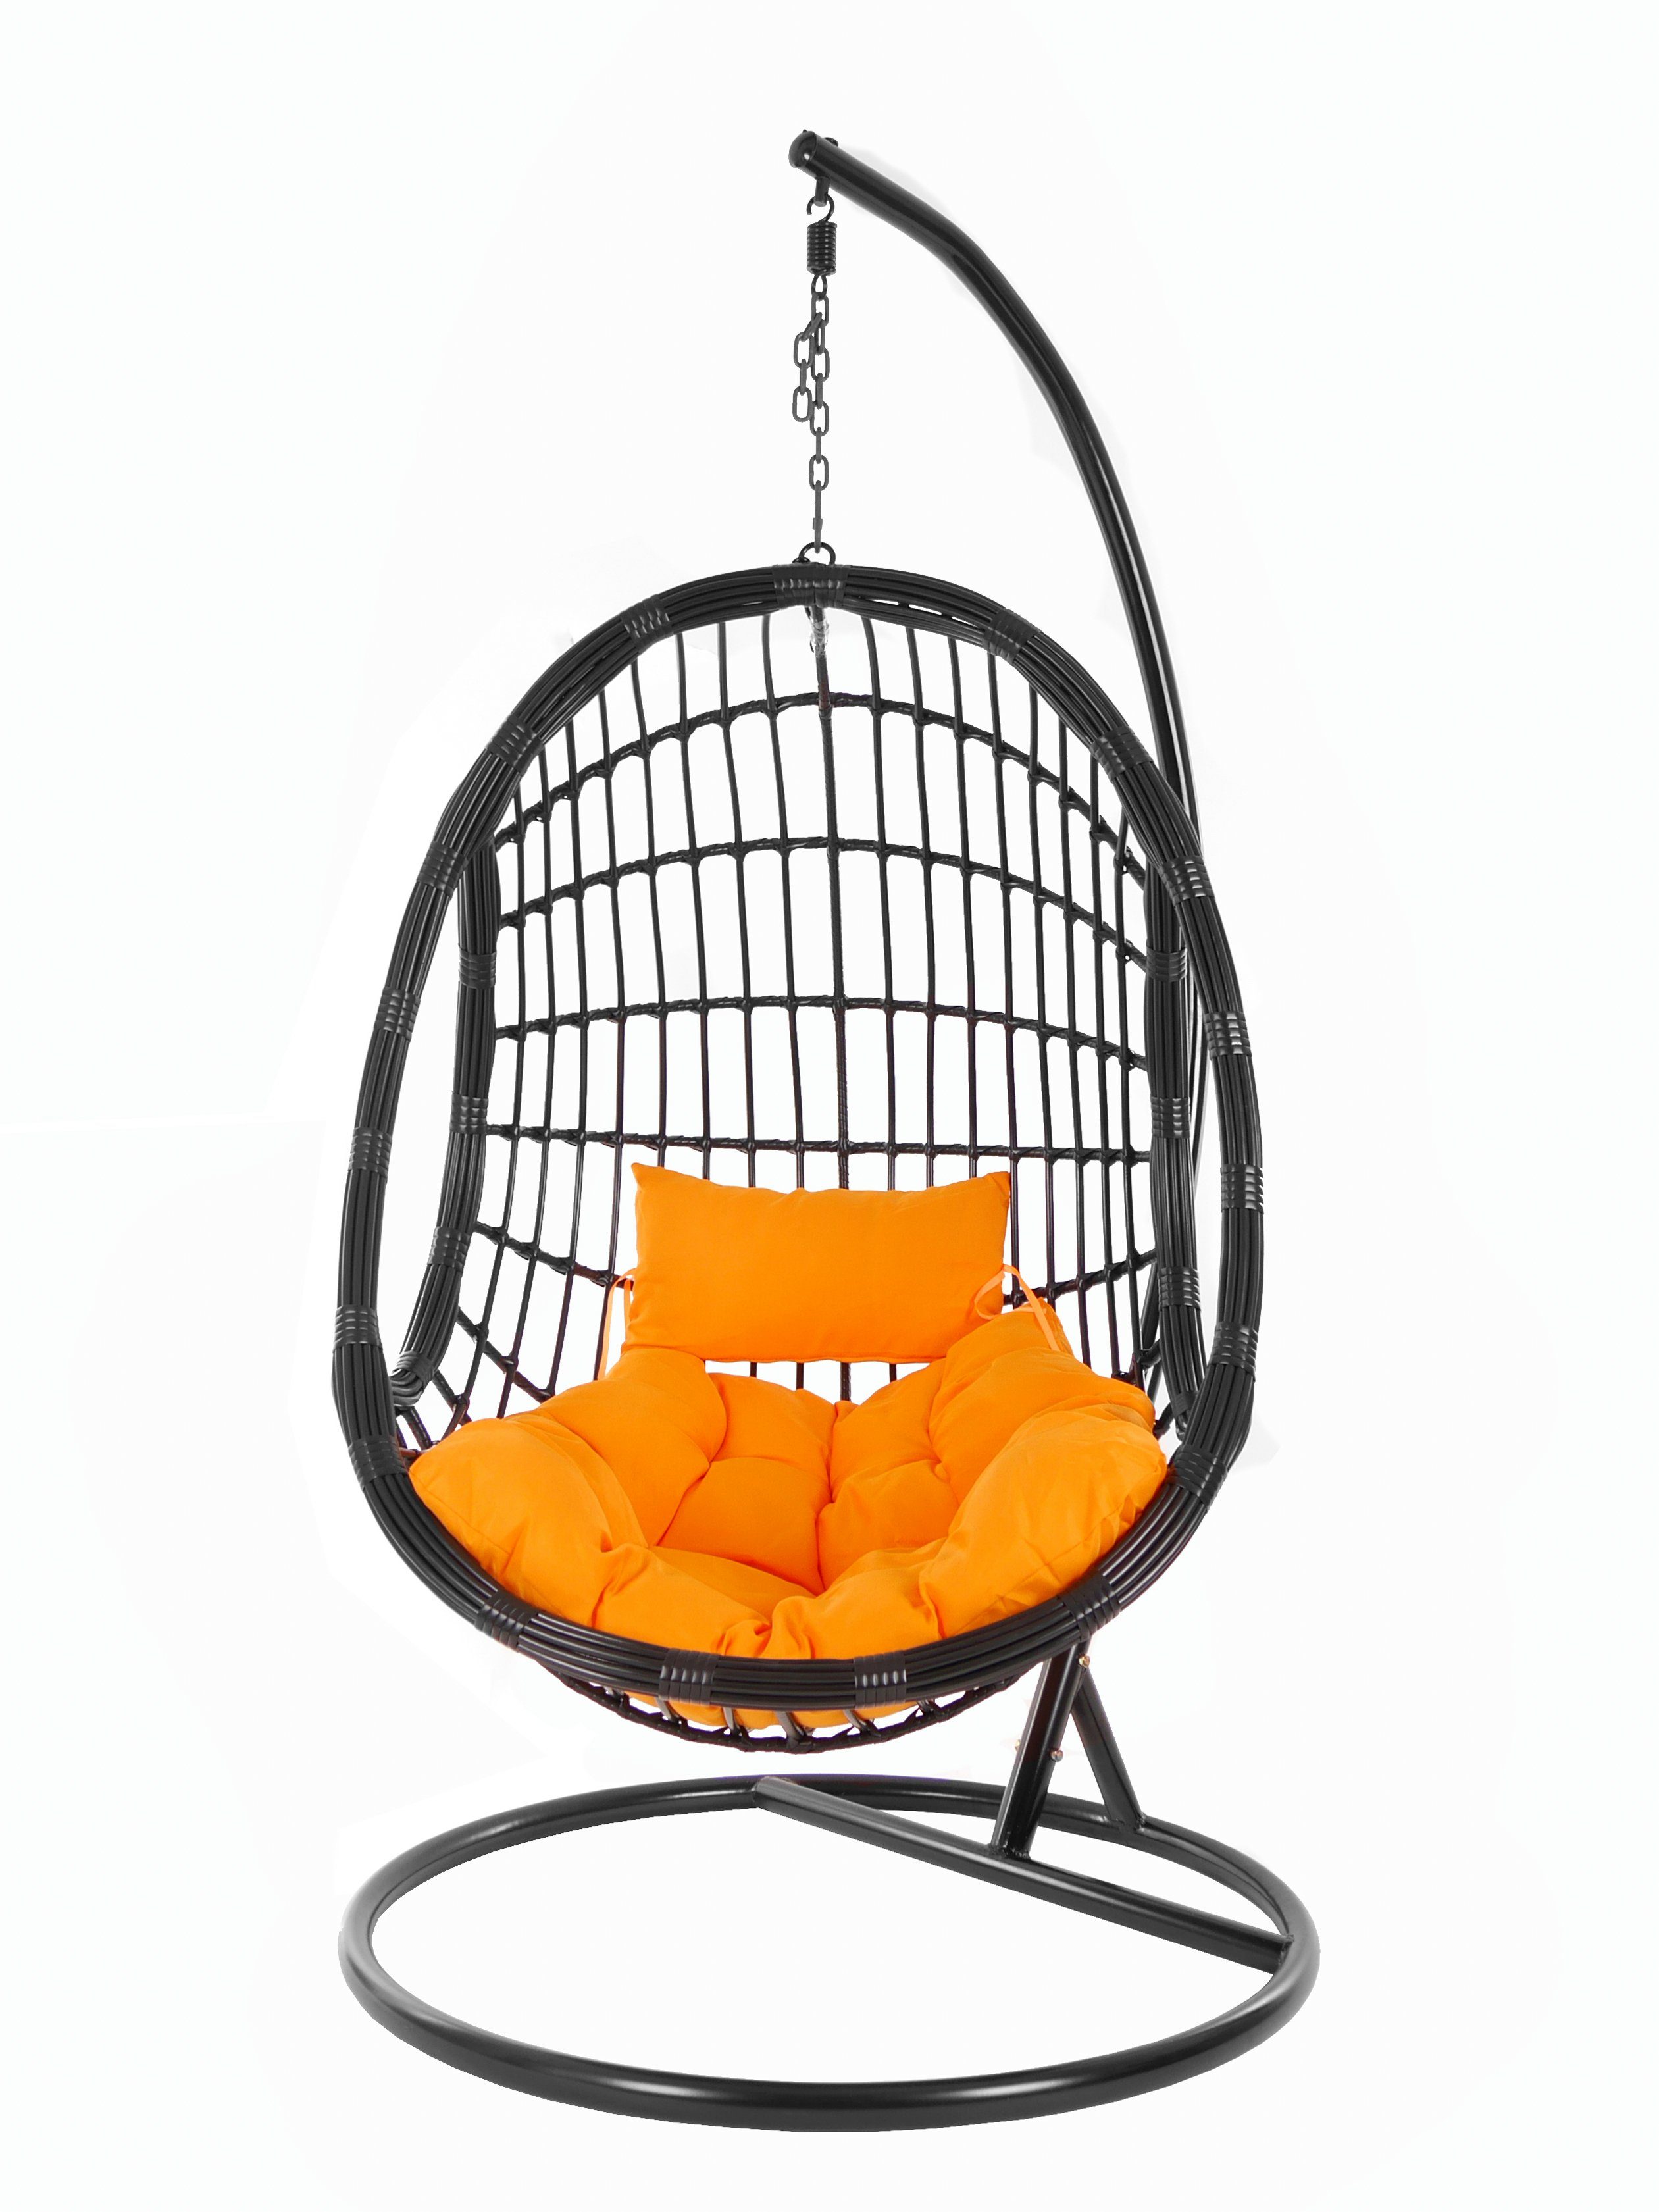 KIDEO Hängesessel PALMANOVA black, Swing Chair, Kissen, edles Loungemöbel, Design Gestell tangerine) schwarz, orange Hängesessel Schwebesessel, und (3030 mit